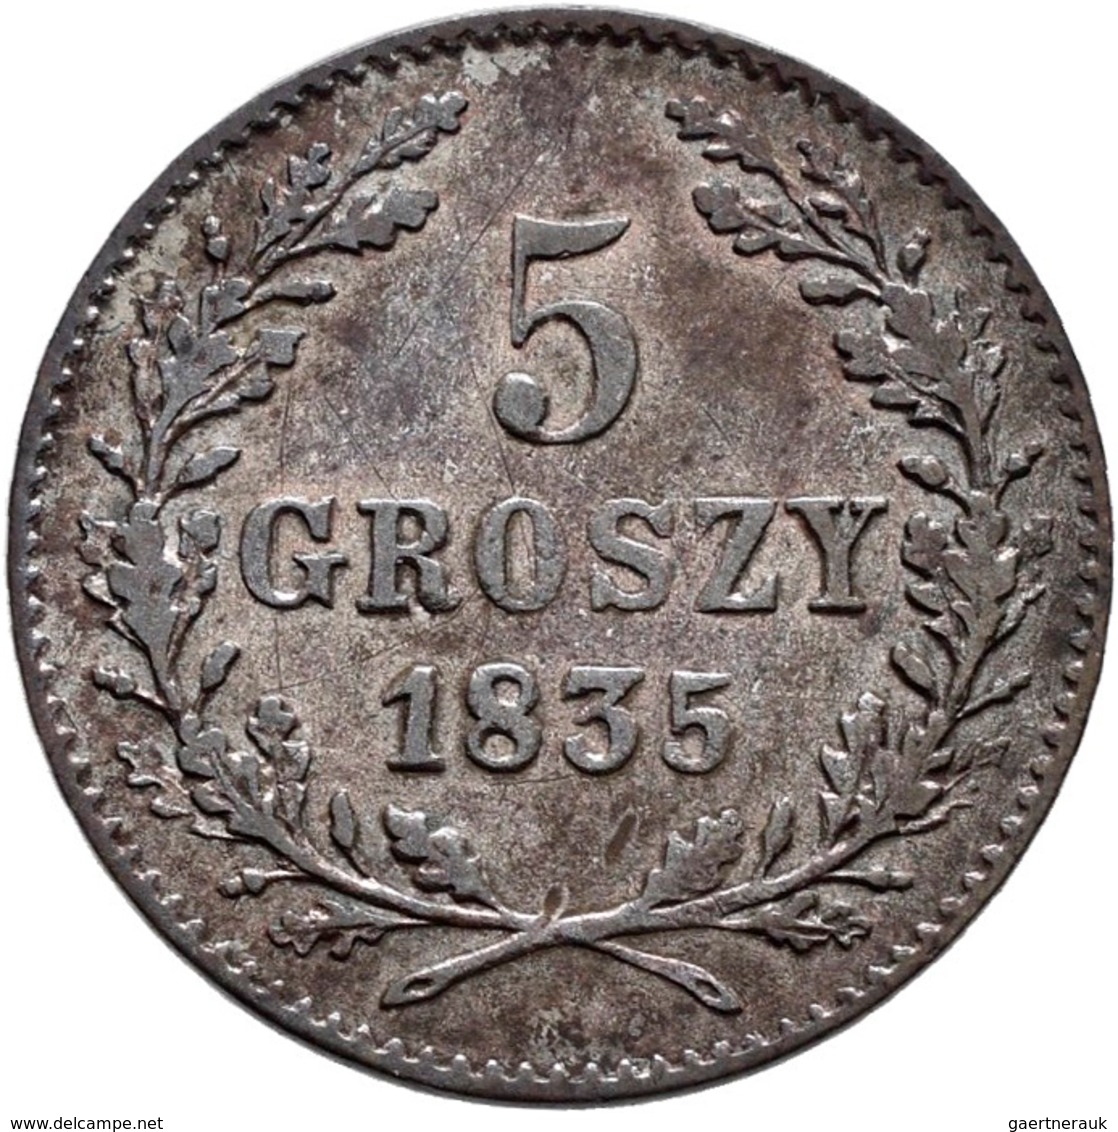 Polen: Krakau / Krakow, Freie Stadt: Lot 3 Münzen 1835: 5 Groszy, 10 Groszy, 1 Zloty. KM# C 11,12,13 - Pologne